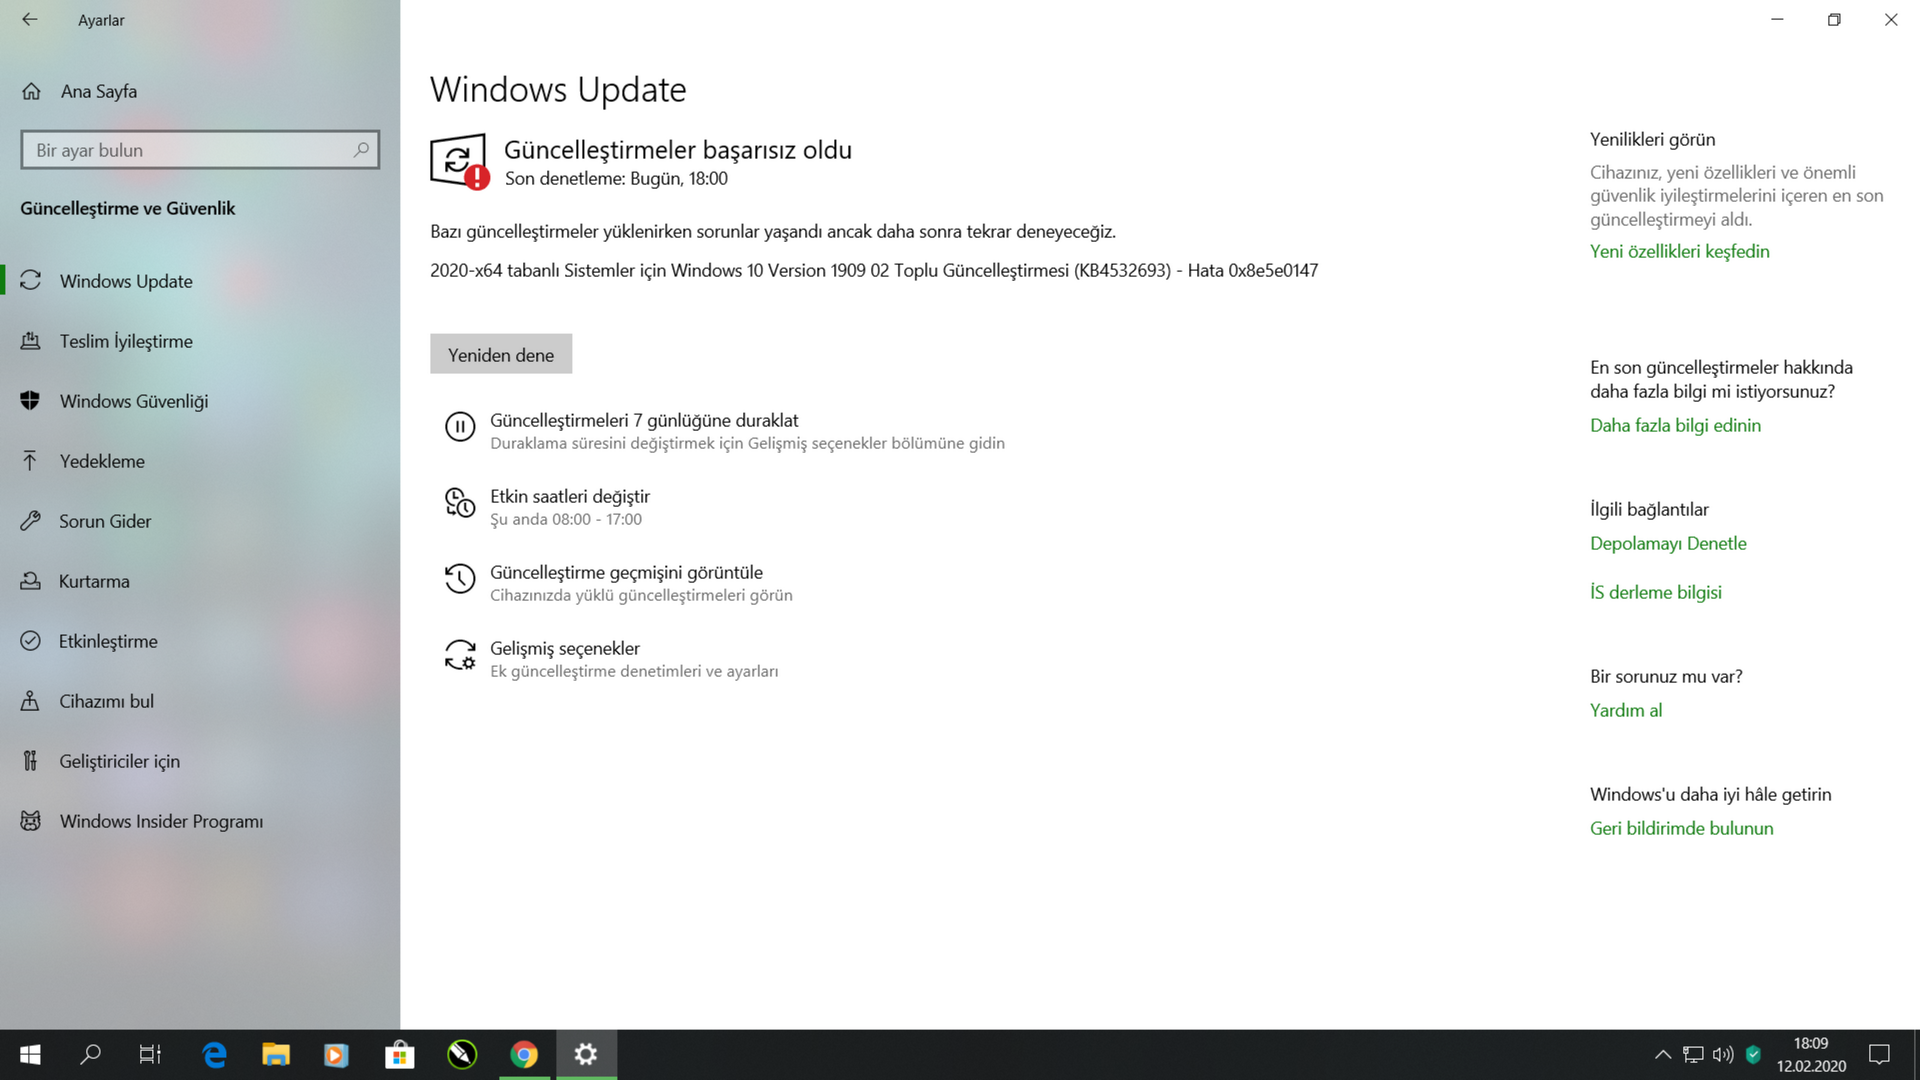 windows 10 update problem KB4532693 e27b3855-74b0-4d2c-8155-cddb55a90ed9?upload=true.png